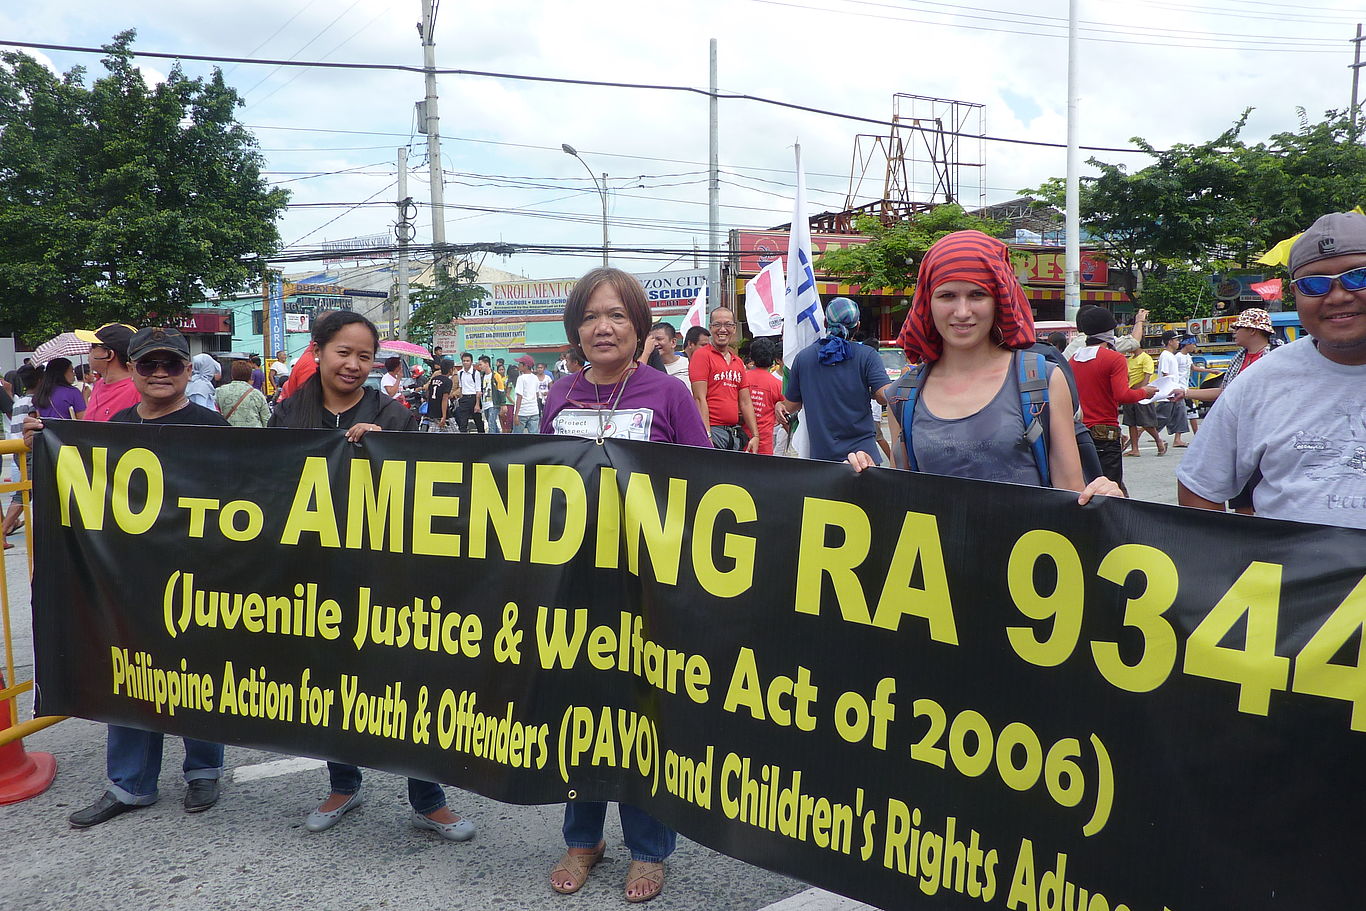 Fünf Personen stehen bei einer Demonstration hinter einem Transparent "No to amending Juvenile Justice & Welfare Act of 2006"